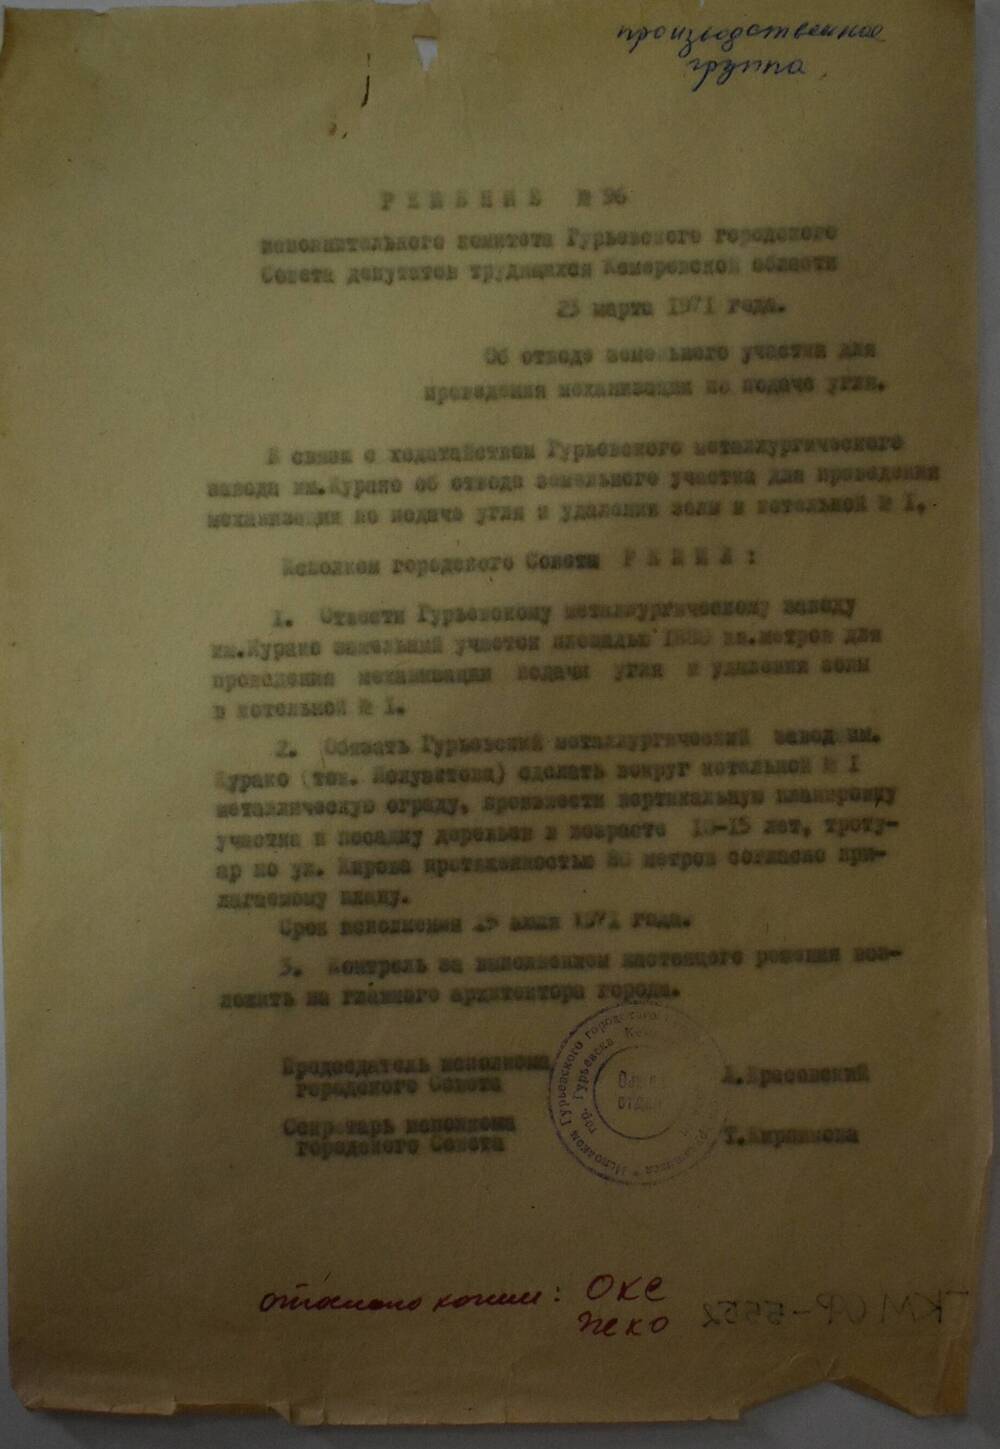 Решение № 96  Гурьевского Исполкома  от 25 марта 1971 года